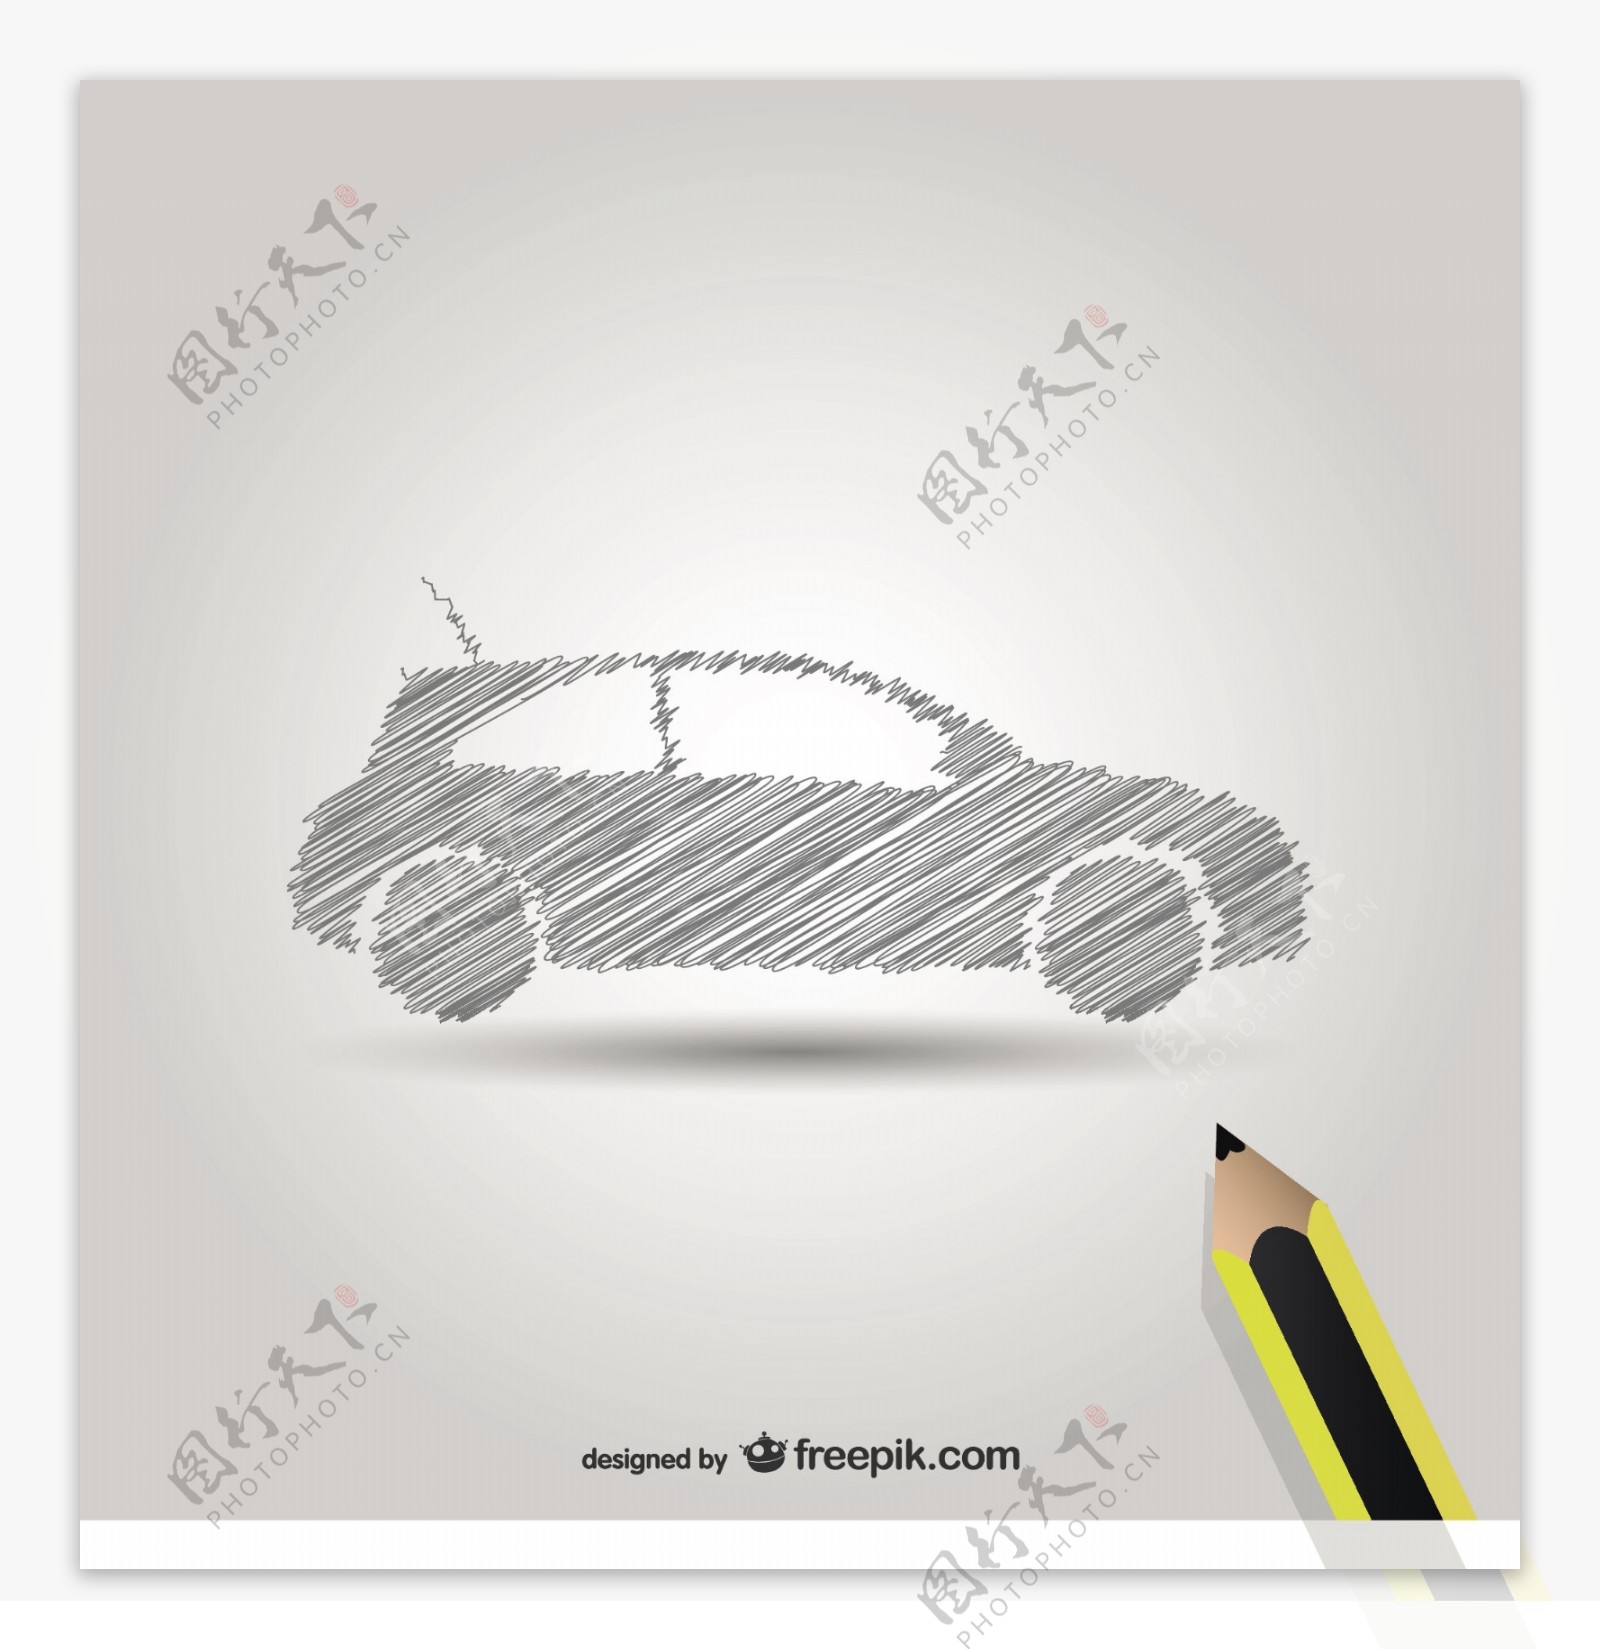 铅笔画汽车符号